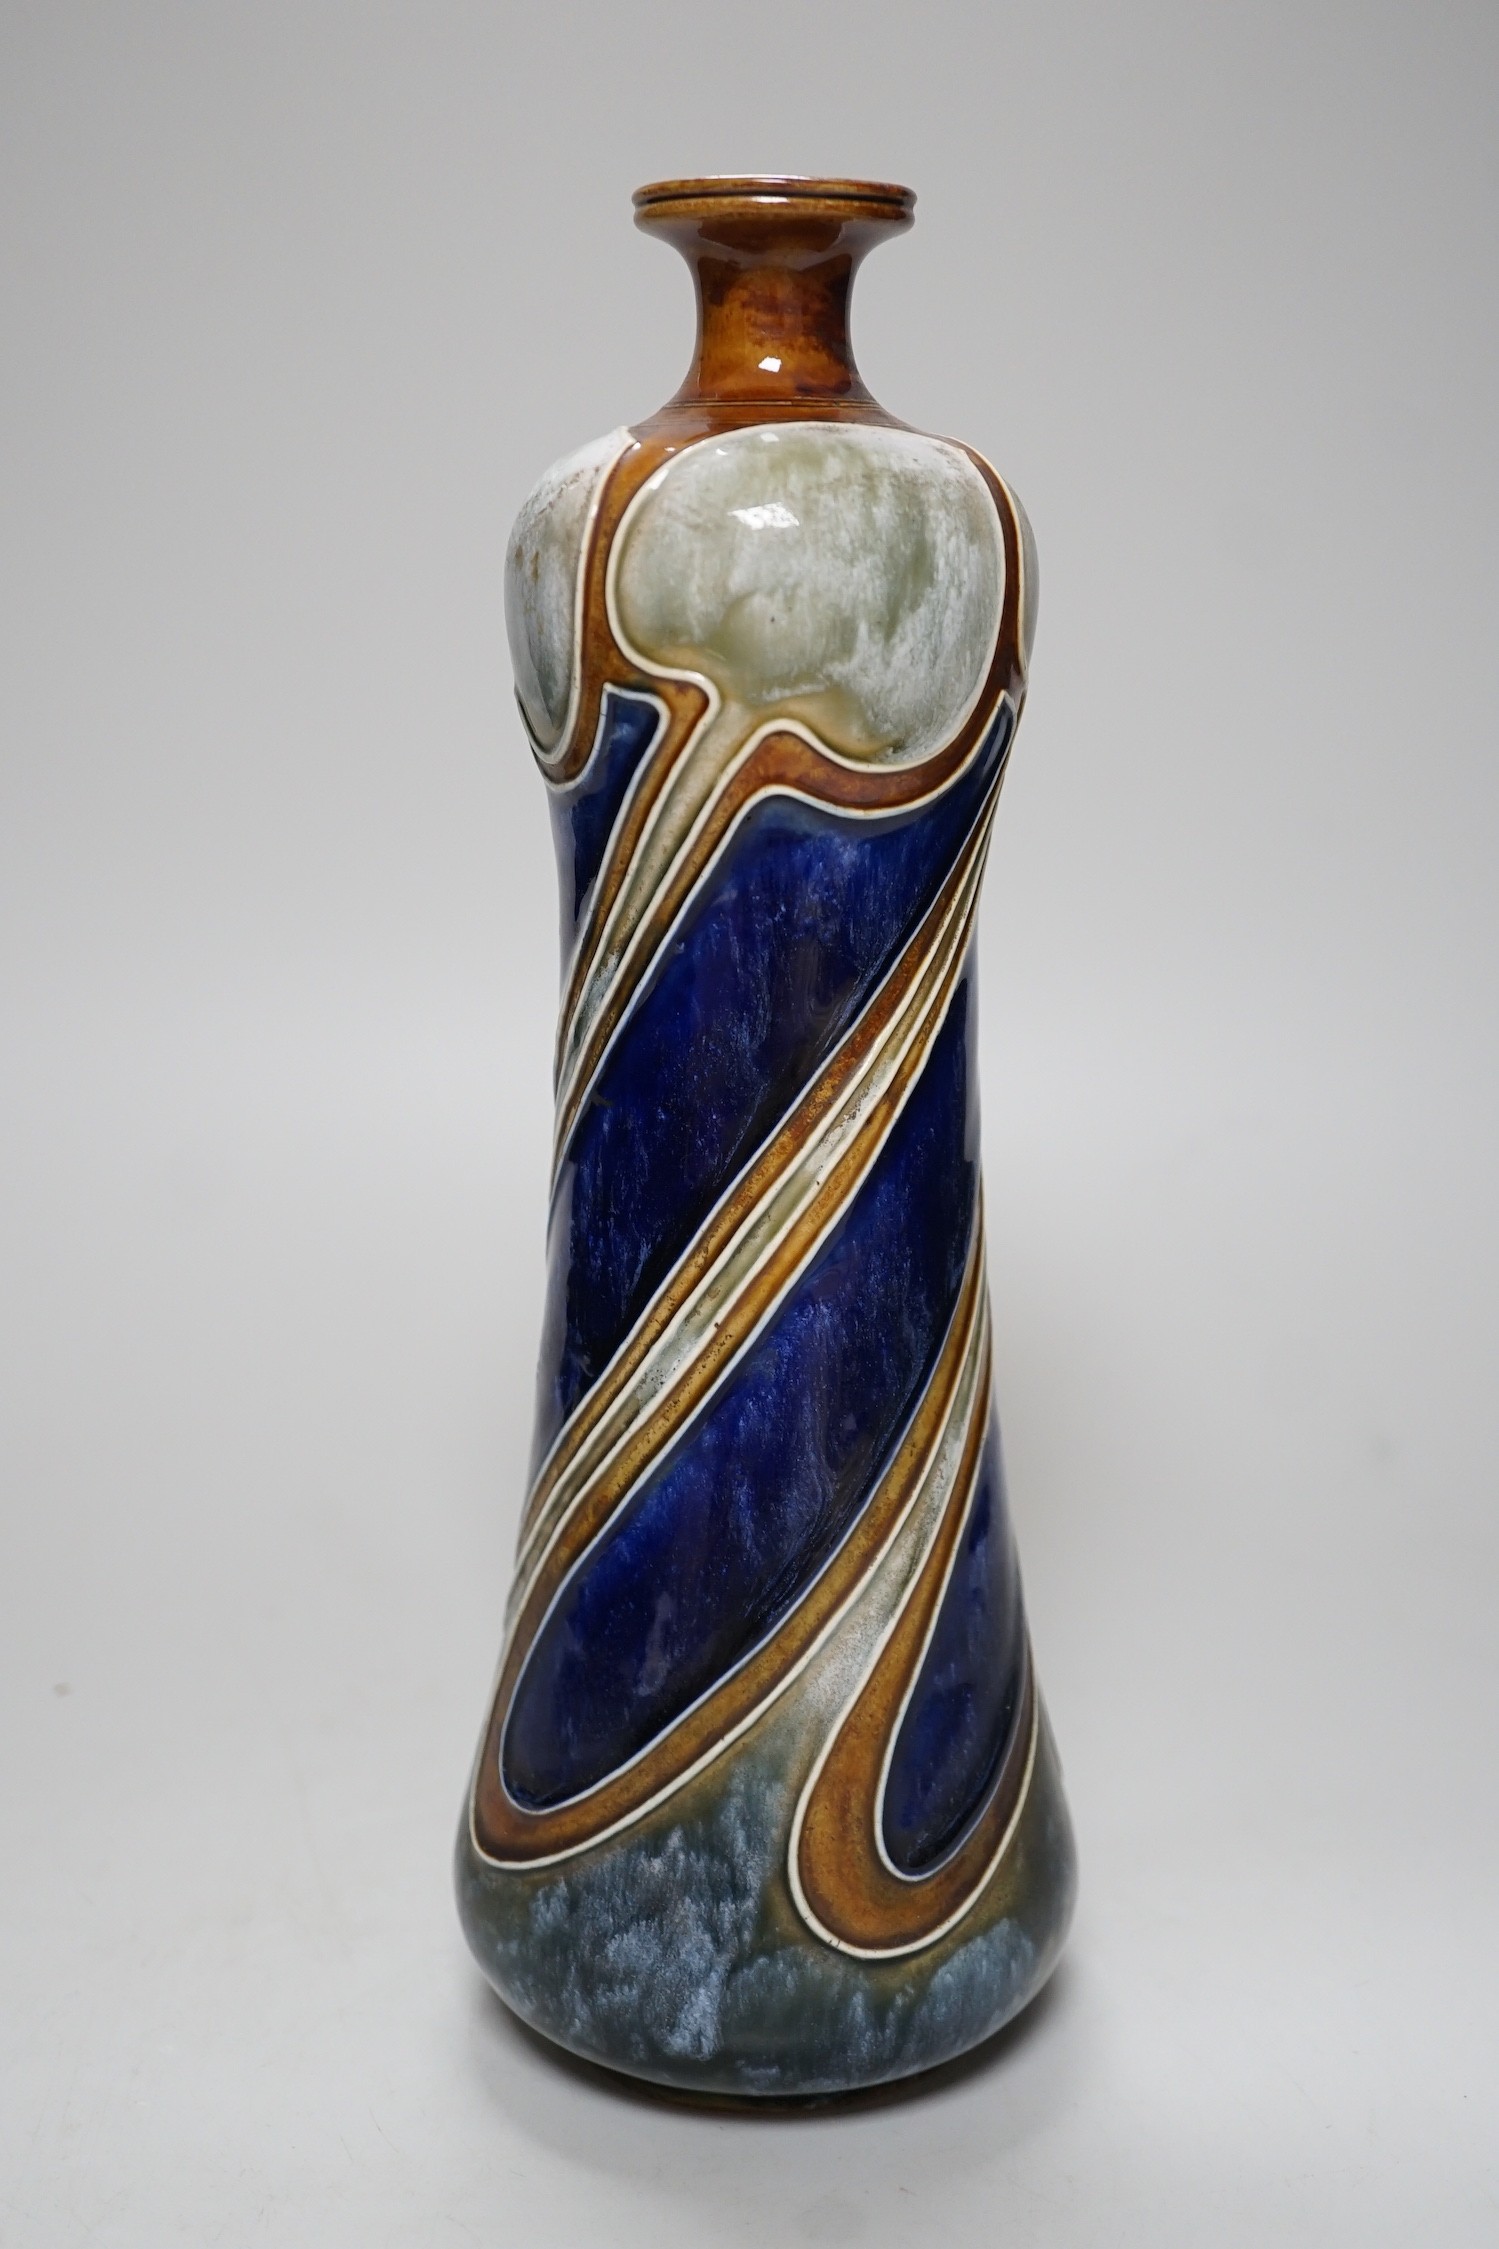 An Art Nouveau Doulton Lambeth vase by Frank Butler, 28.5cm